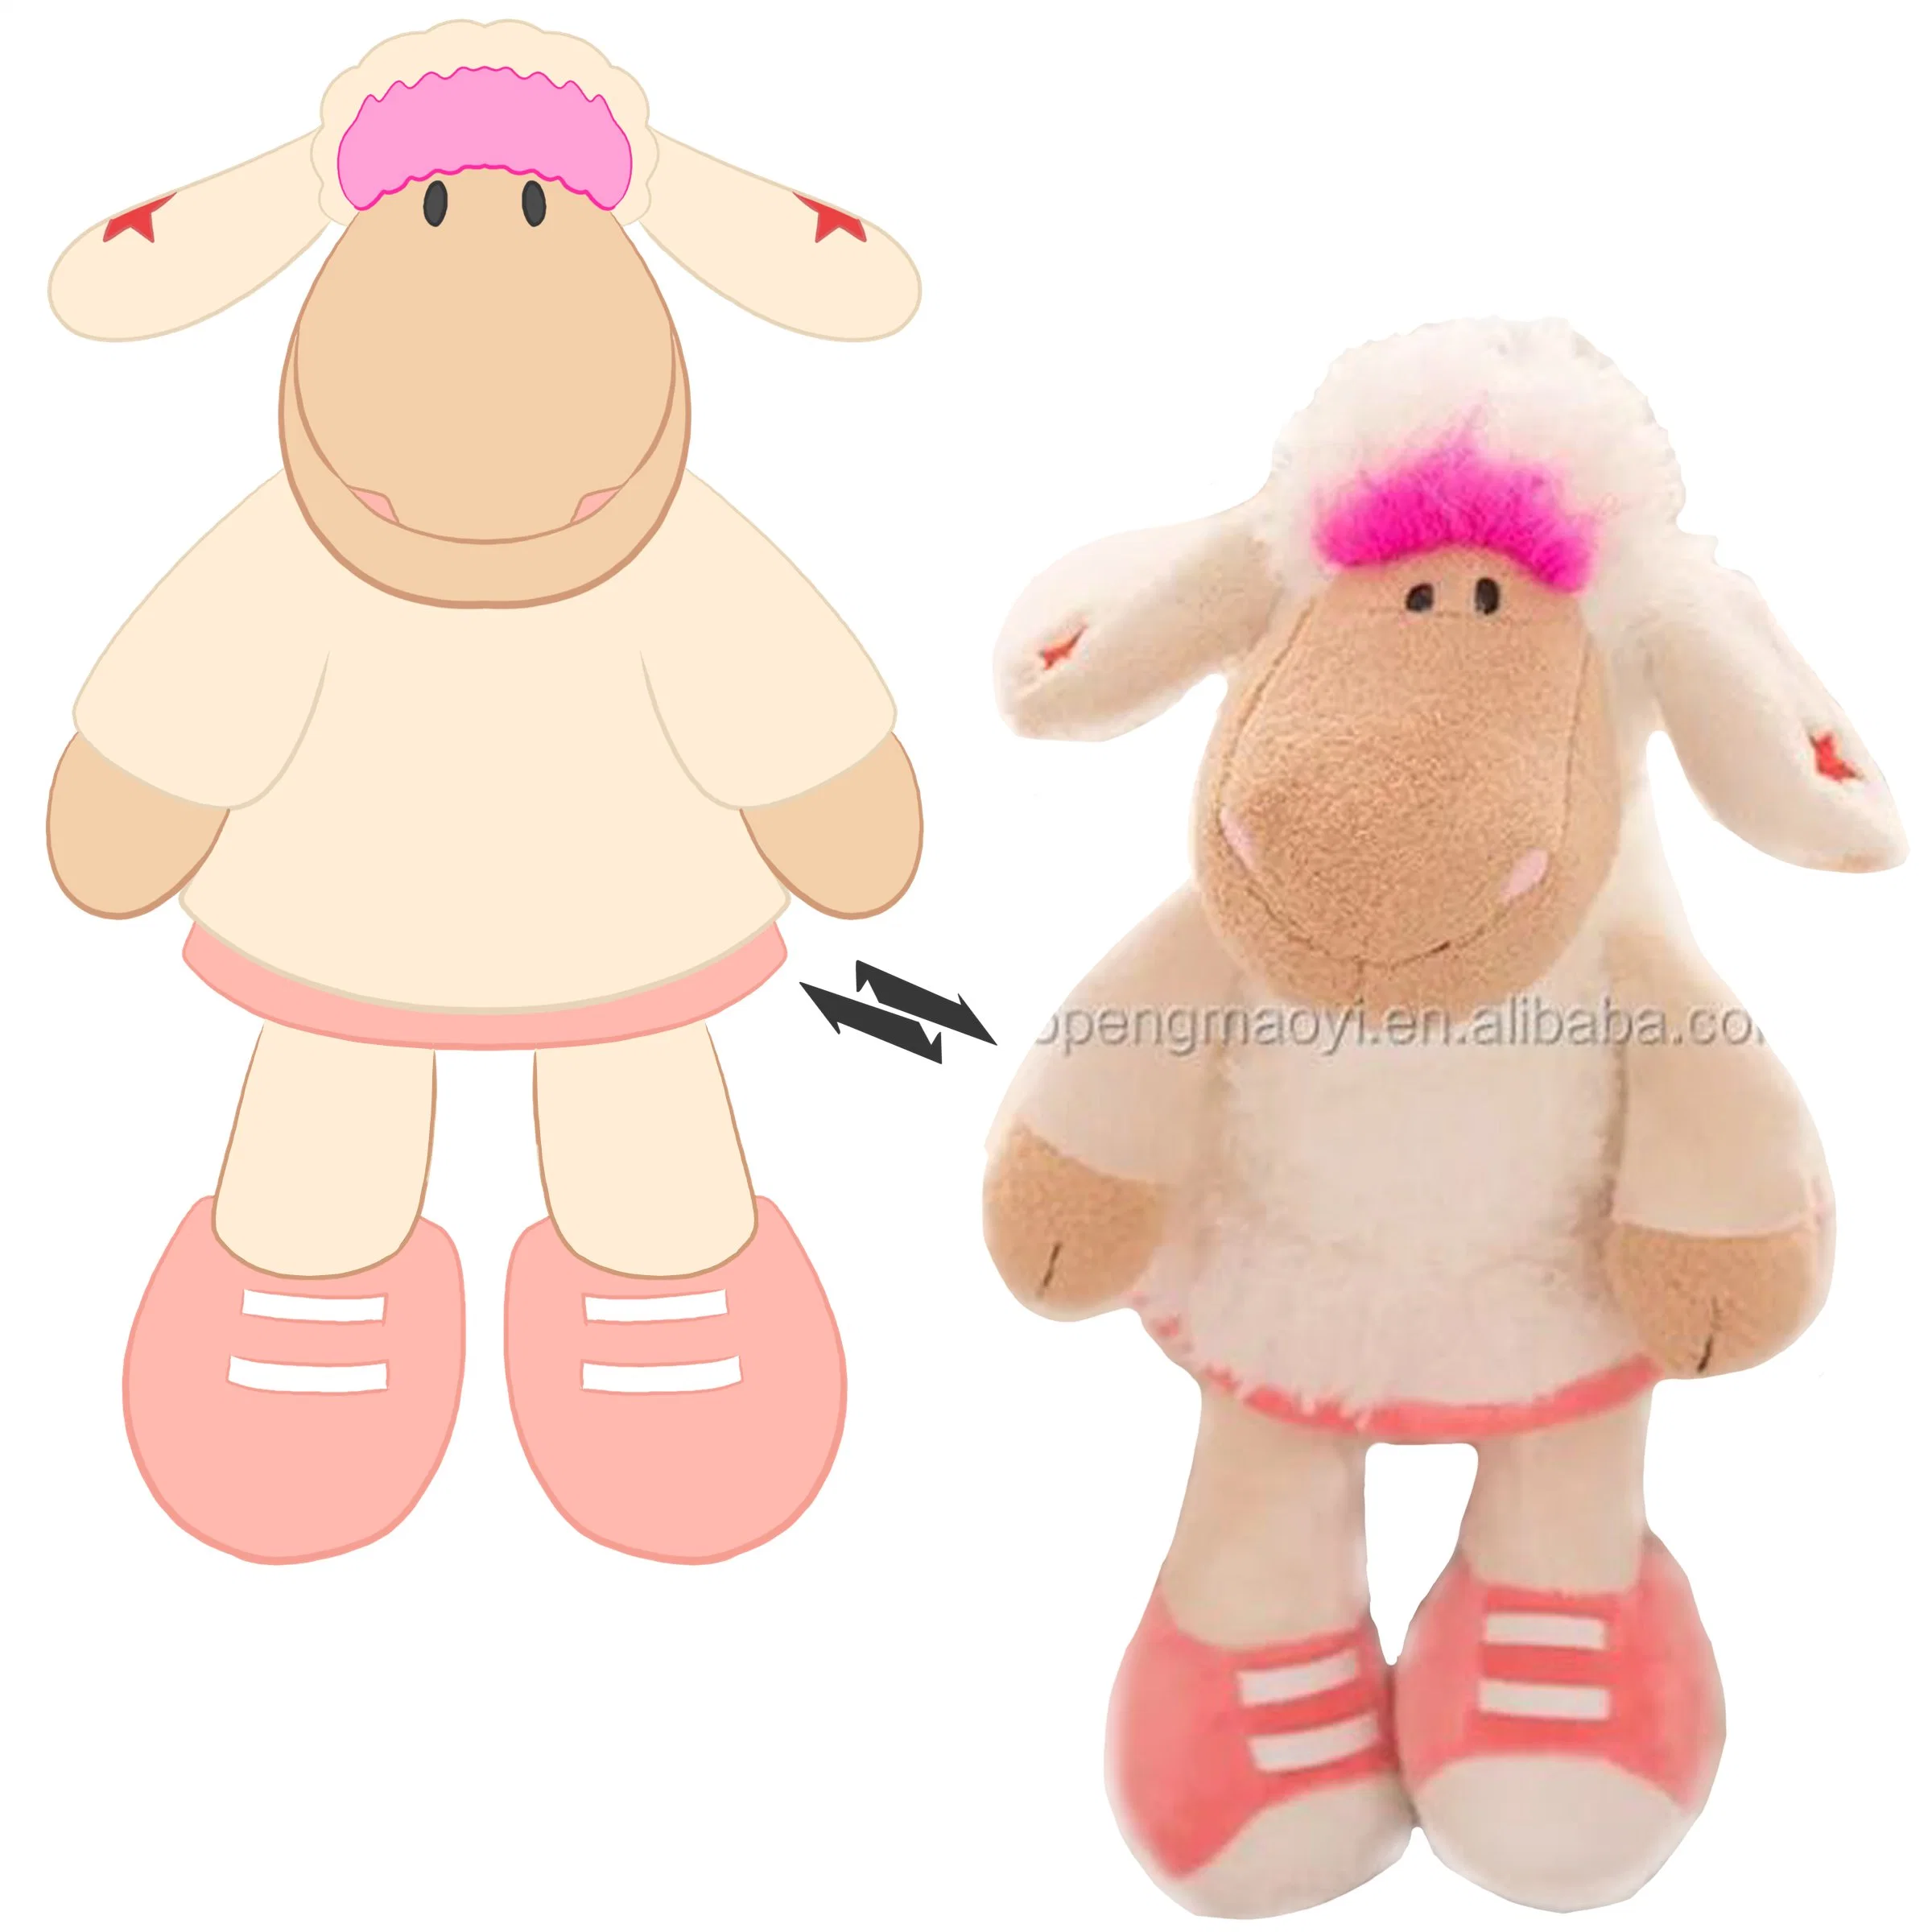 Игрушки Custom Animals игрушка Cute Designed Bear плюшевый игрушки Stuffed для Ребенок спит